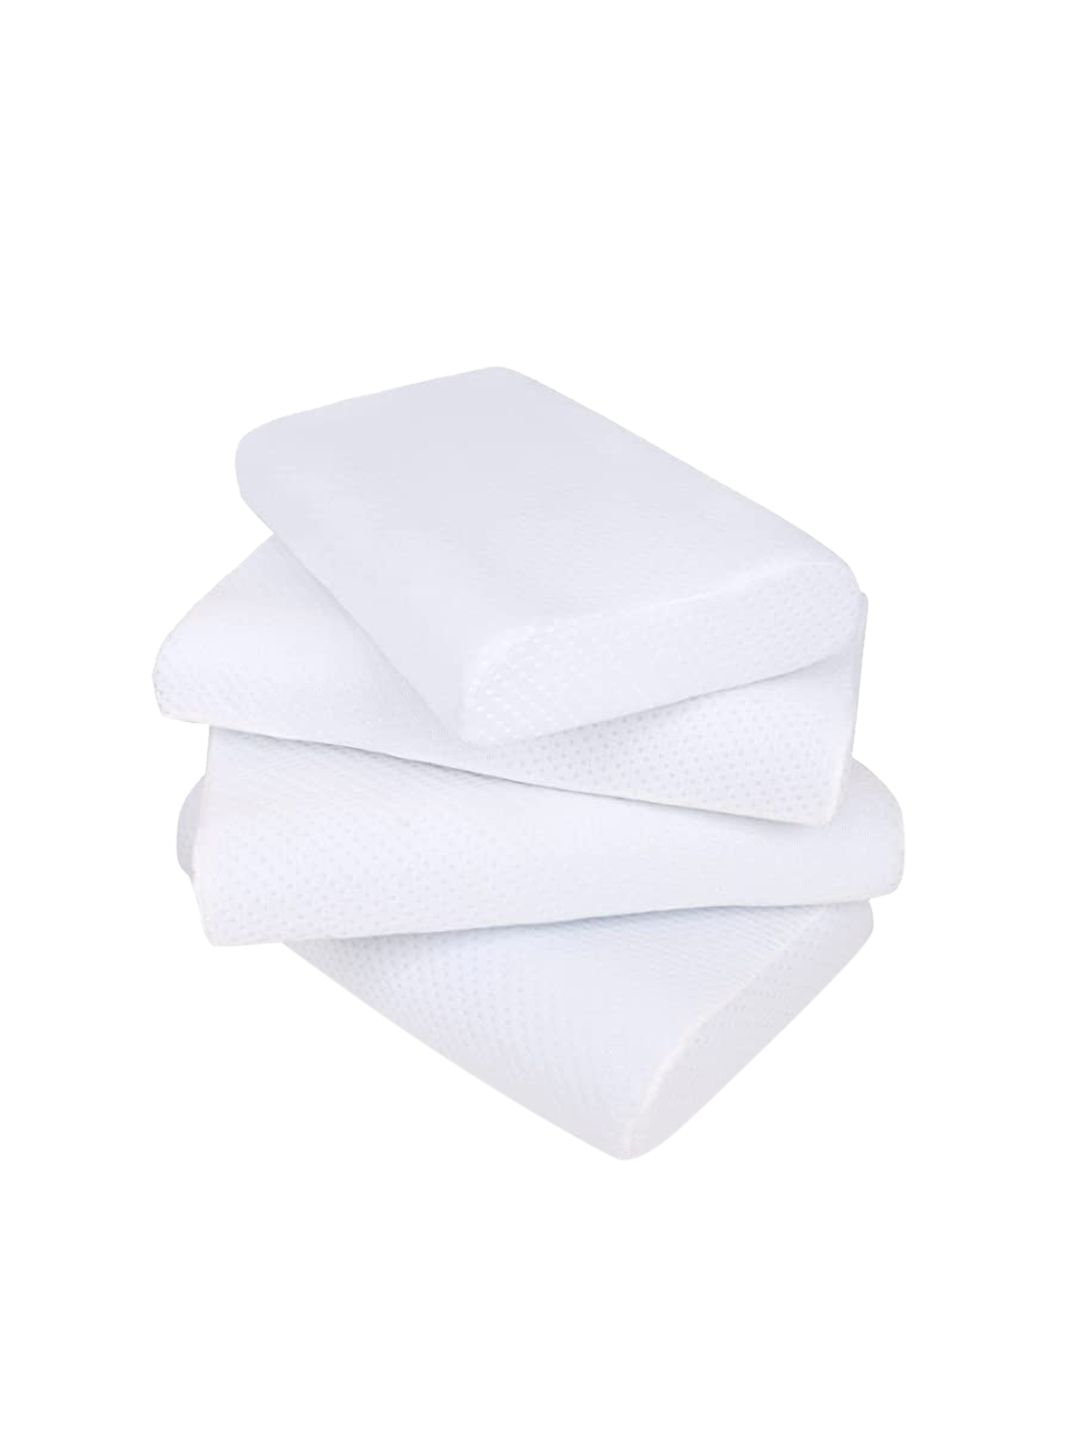 Sleepsia Set Of 4 White Solid Cotton Pillows Price in India